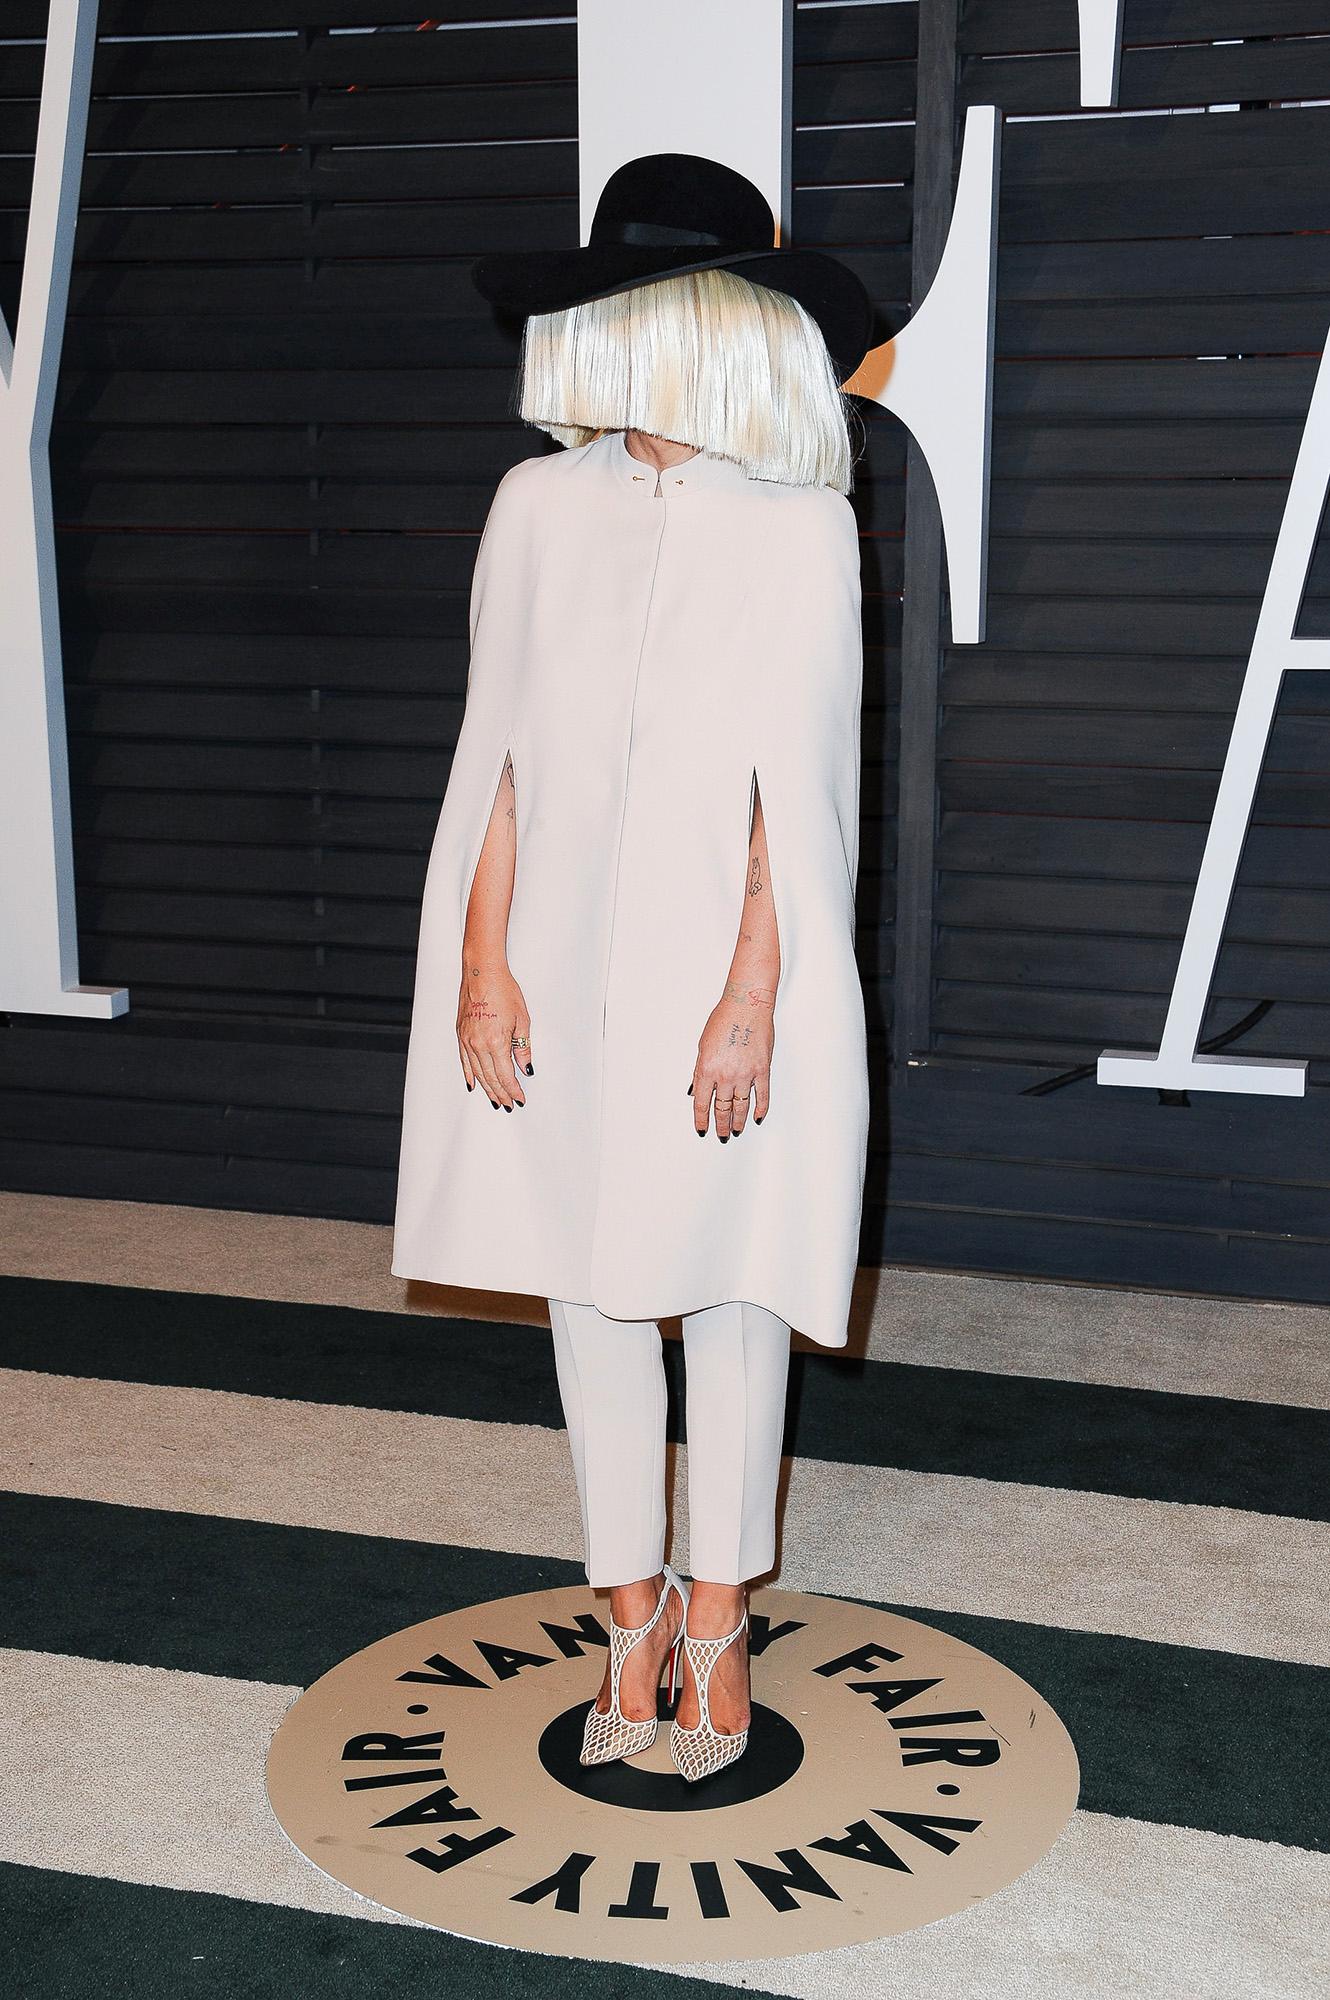 Sia Sia fortsätter gömma sitt ansikte under en peruk och fick till en riktigt snygg och trendig look till Vanity Fair-festen.